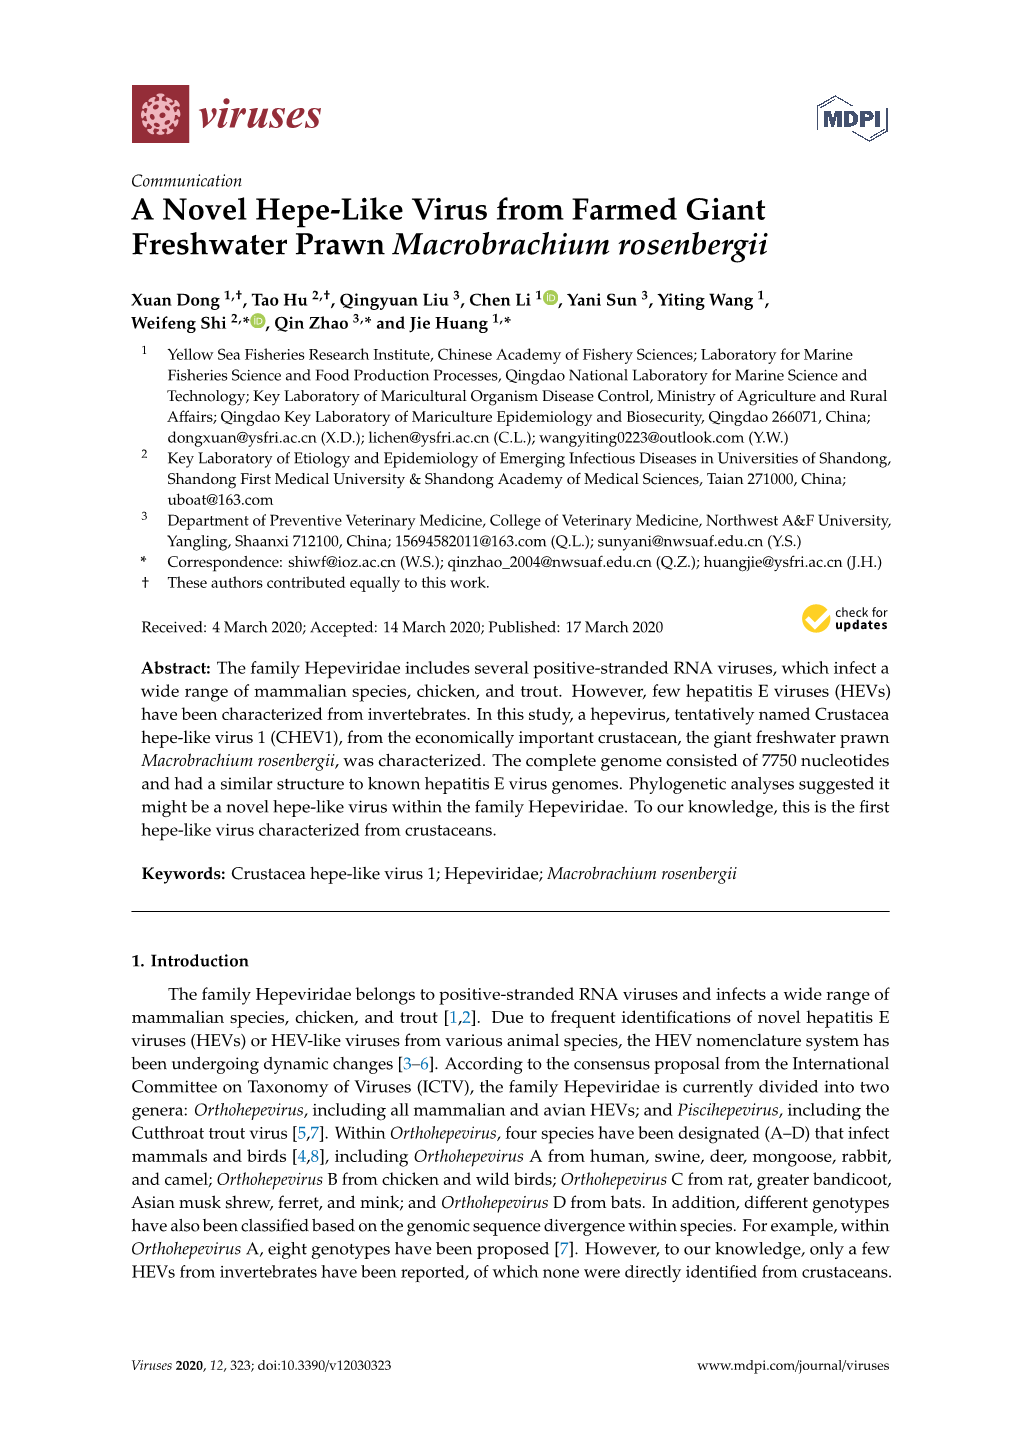 A Novel Hepe-Like Virus from Farmed Giant Freshwater Prawn Macrobrachium Rosenbergii